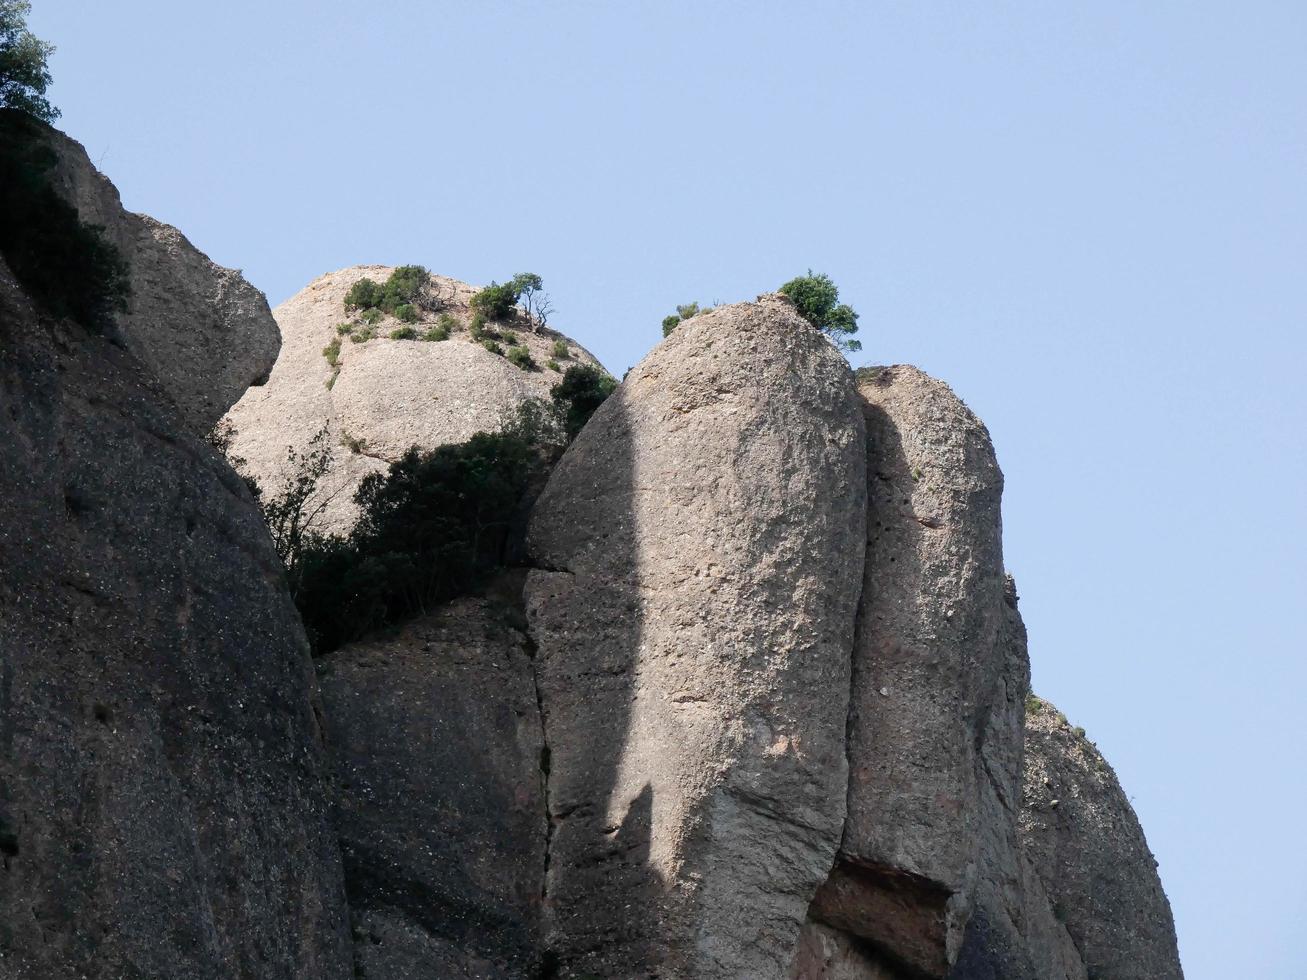 rocas de la montaña de montserrat al norte de la ciudad de barcelona foto